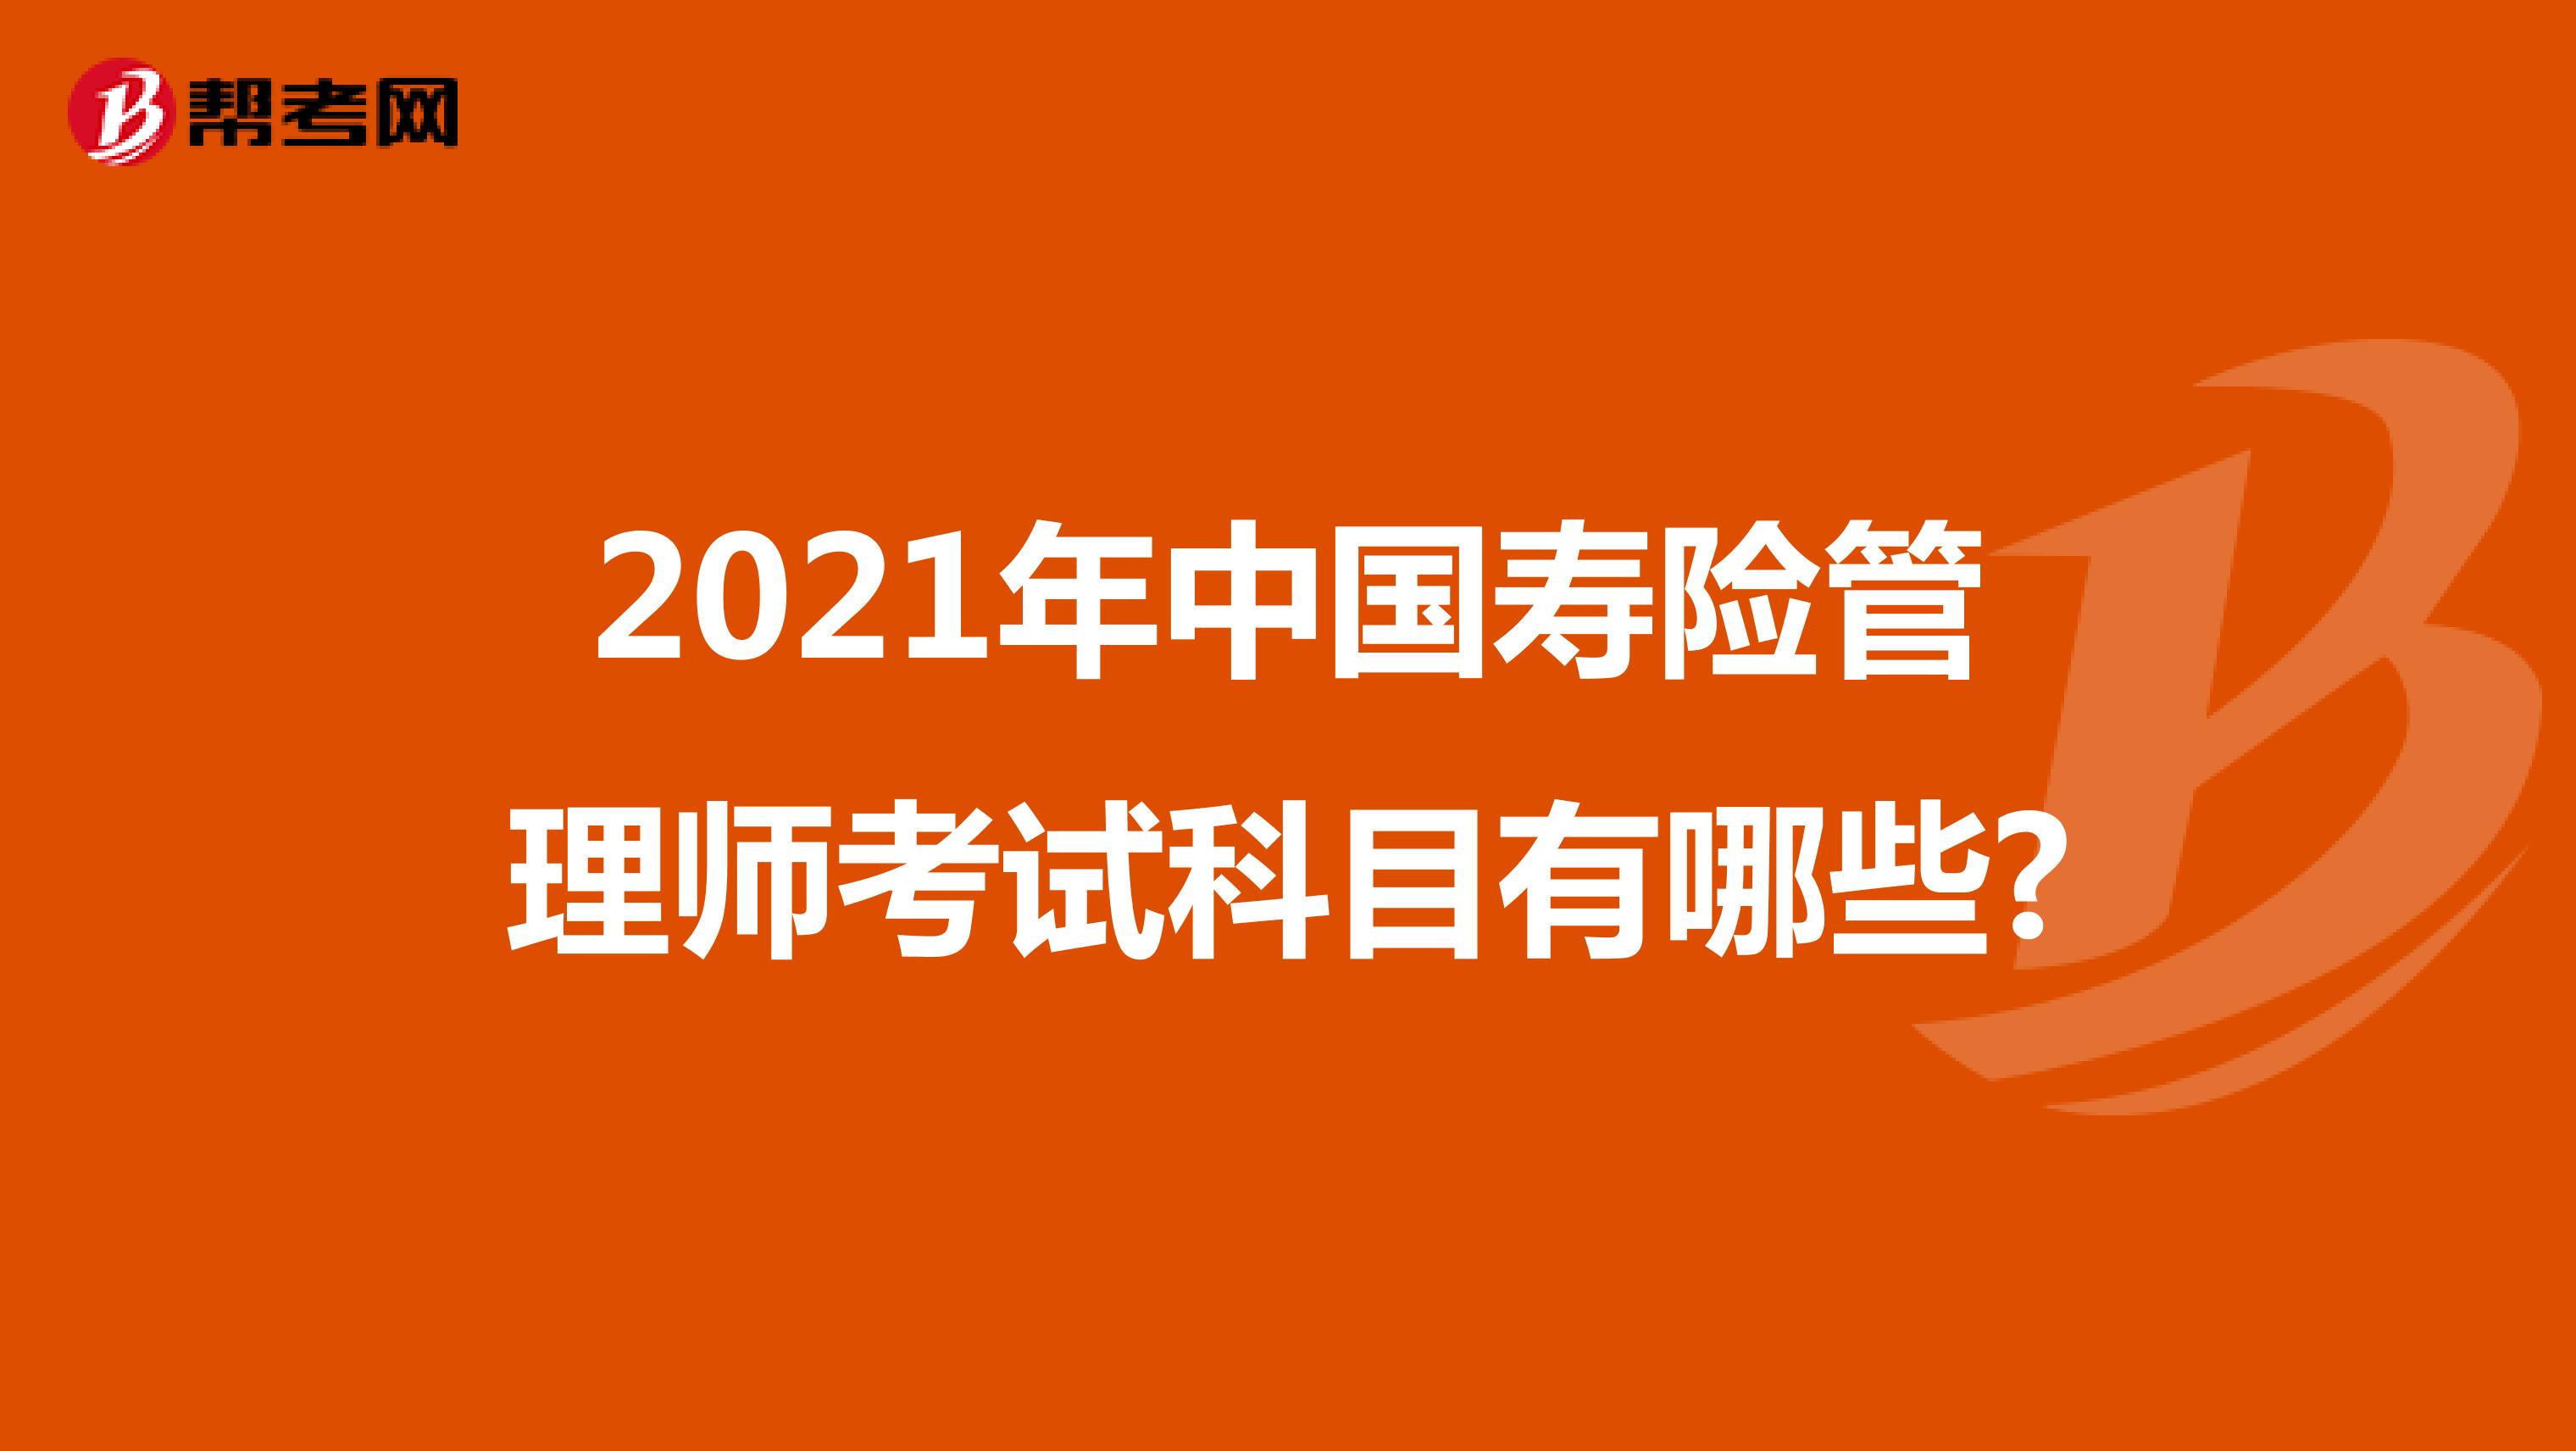 2021年中国寿险管理师考试科目有哪些?